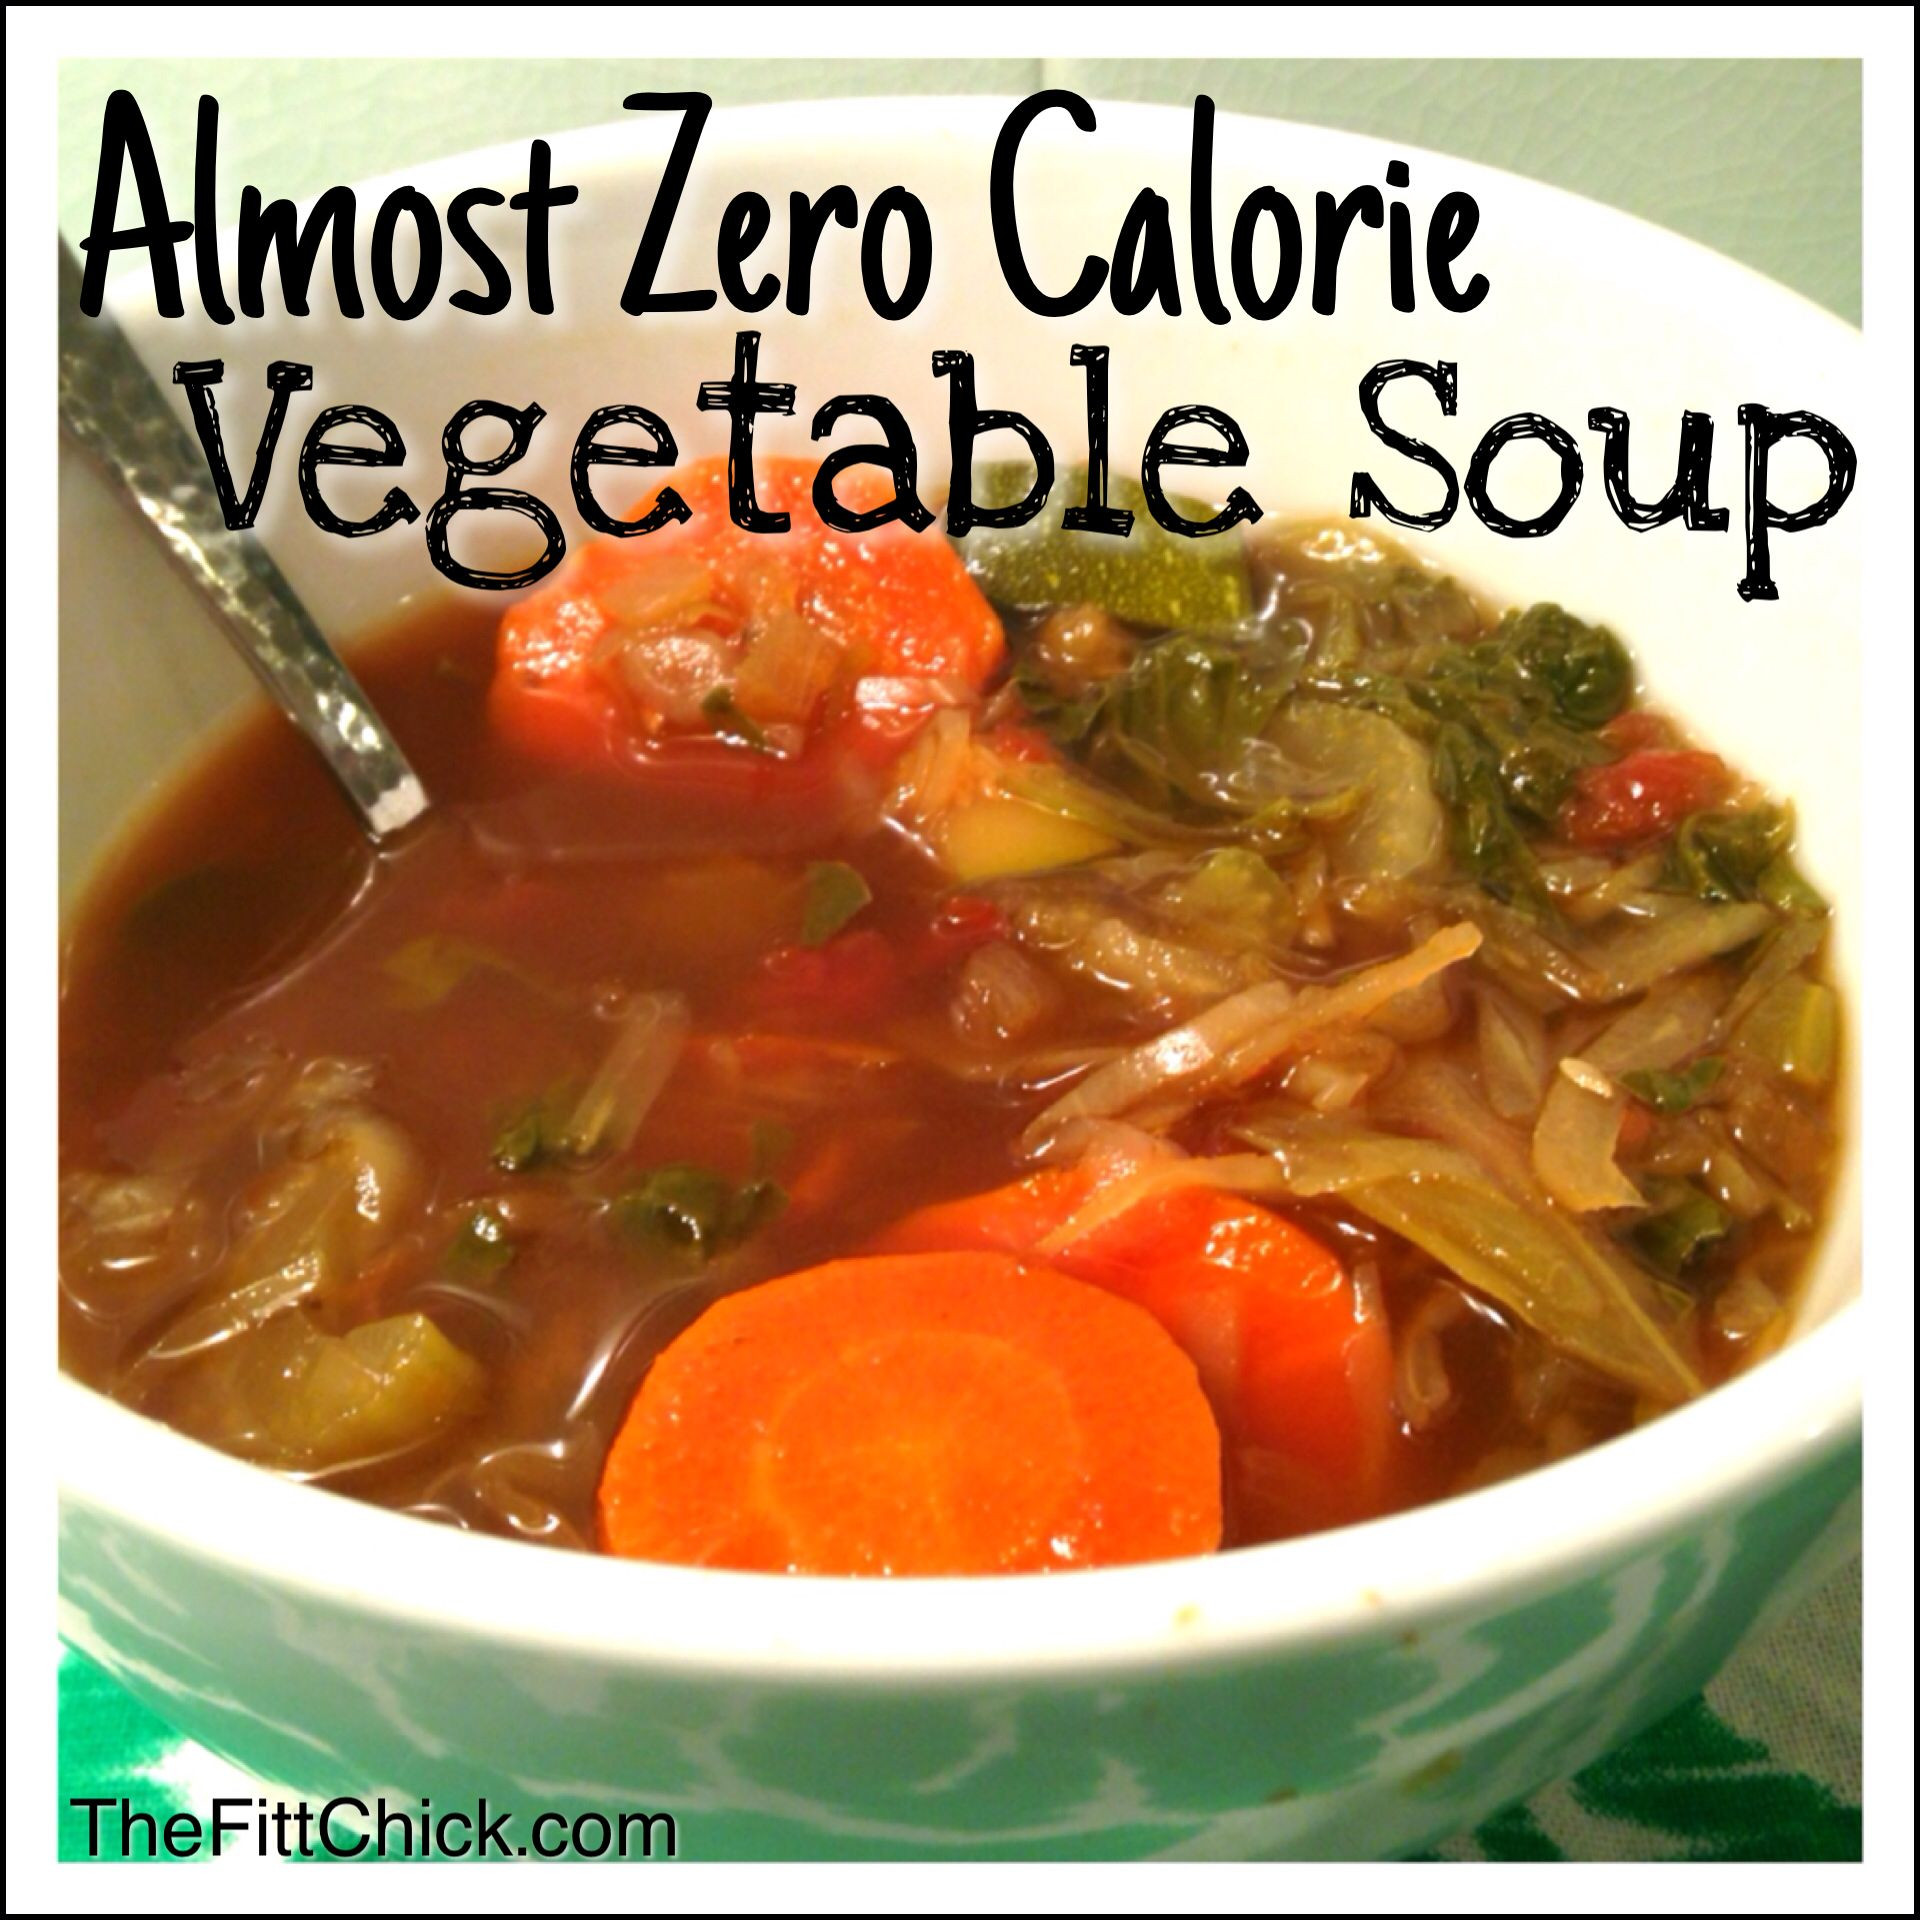 Low Calorie Soup Recipes Weight Watchers
 The 25 best Low calorie ve able soup ideas on Pinterest